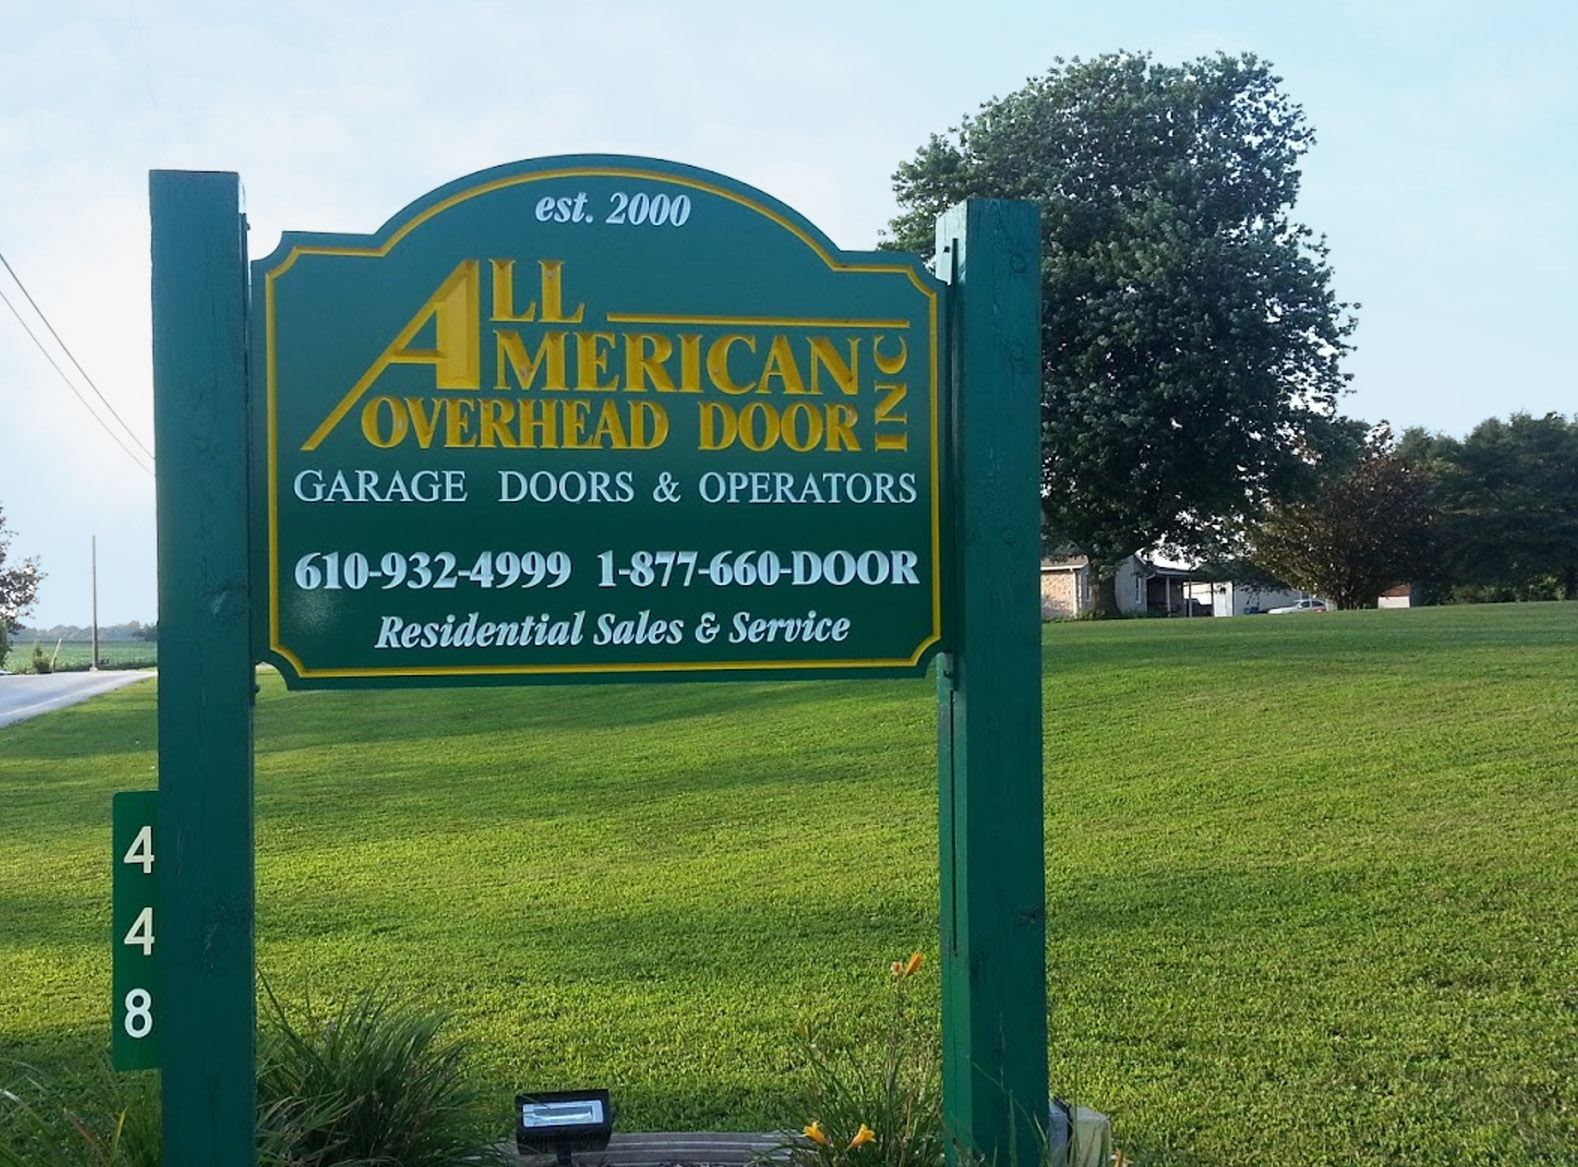 All American Overhead Door street sign